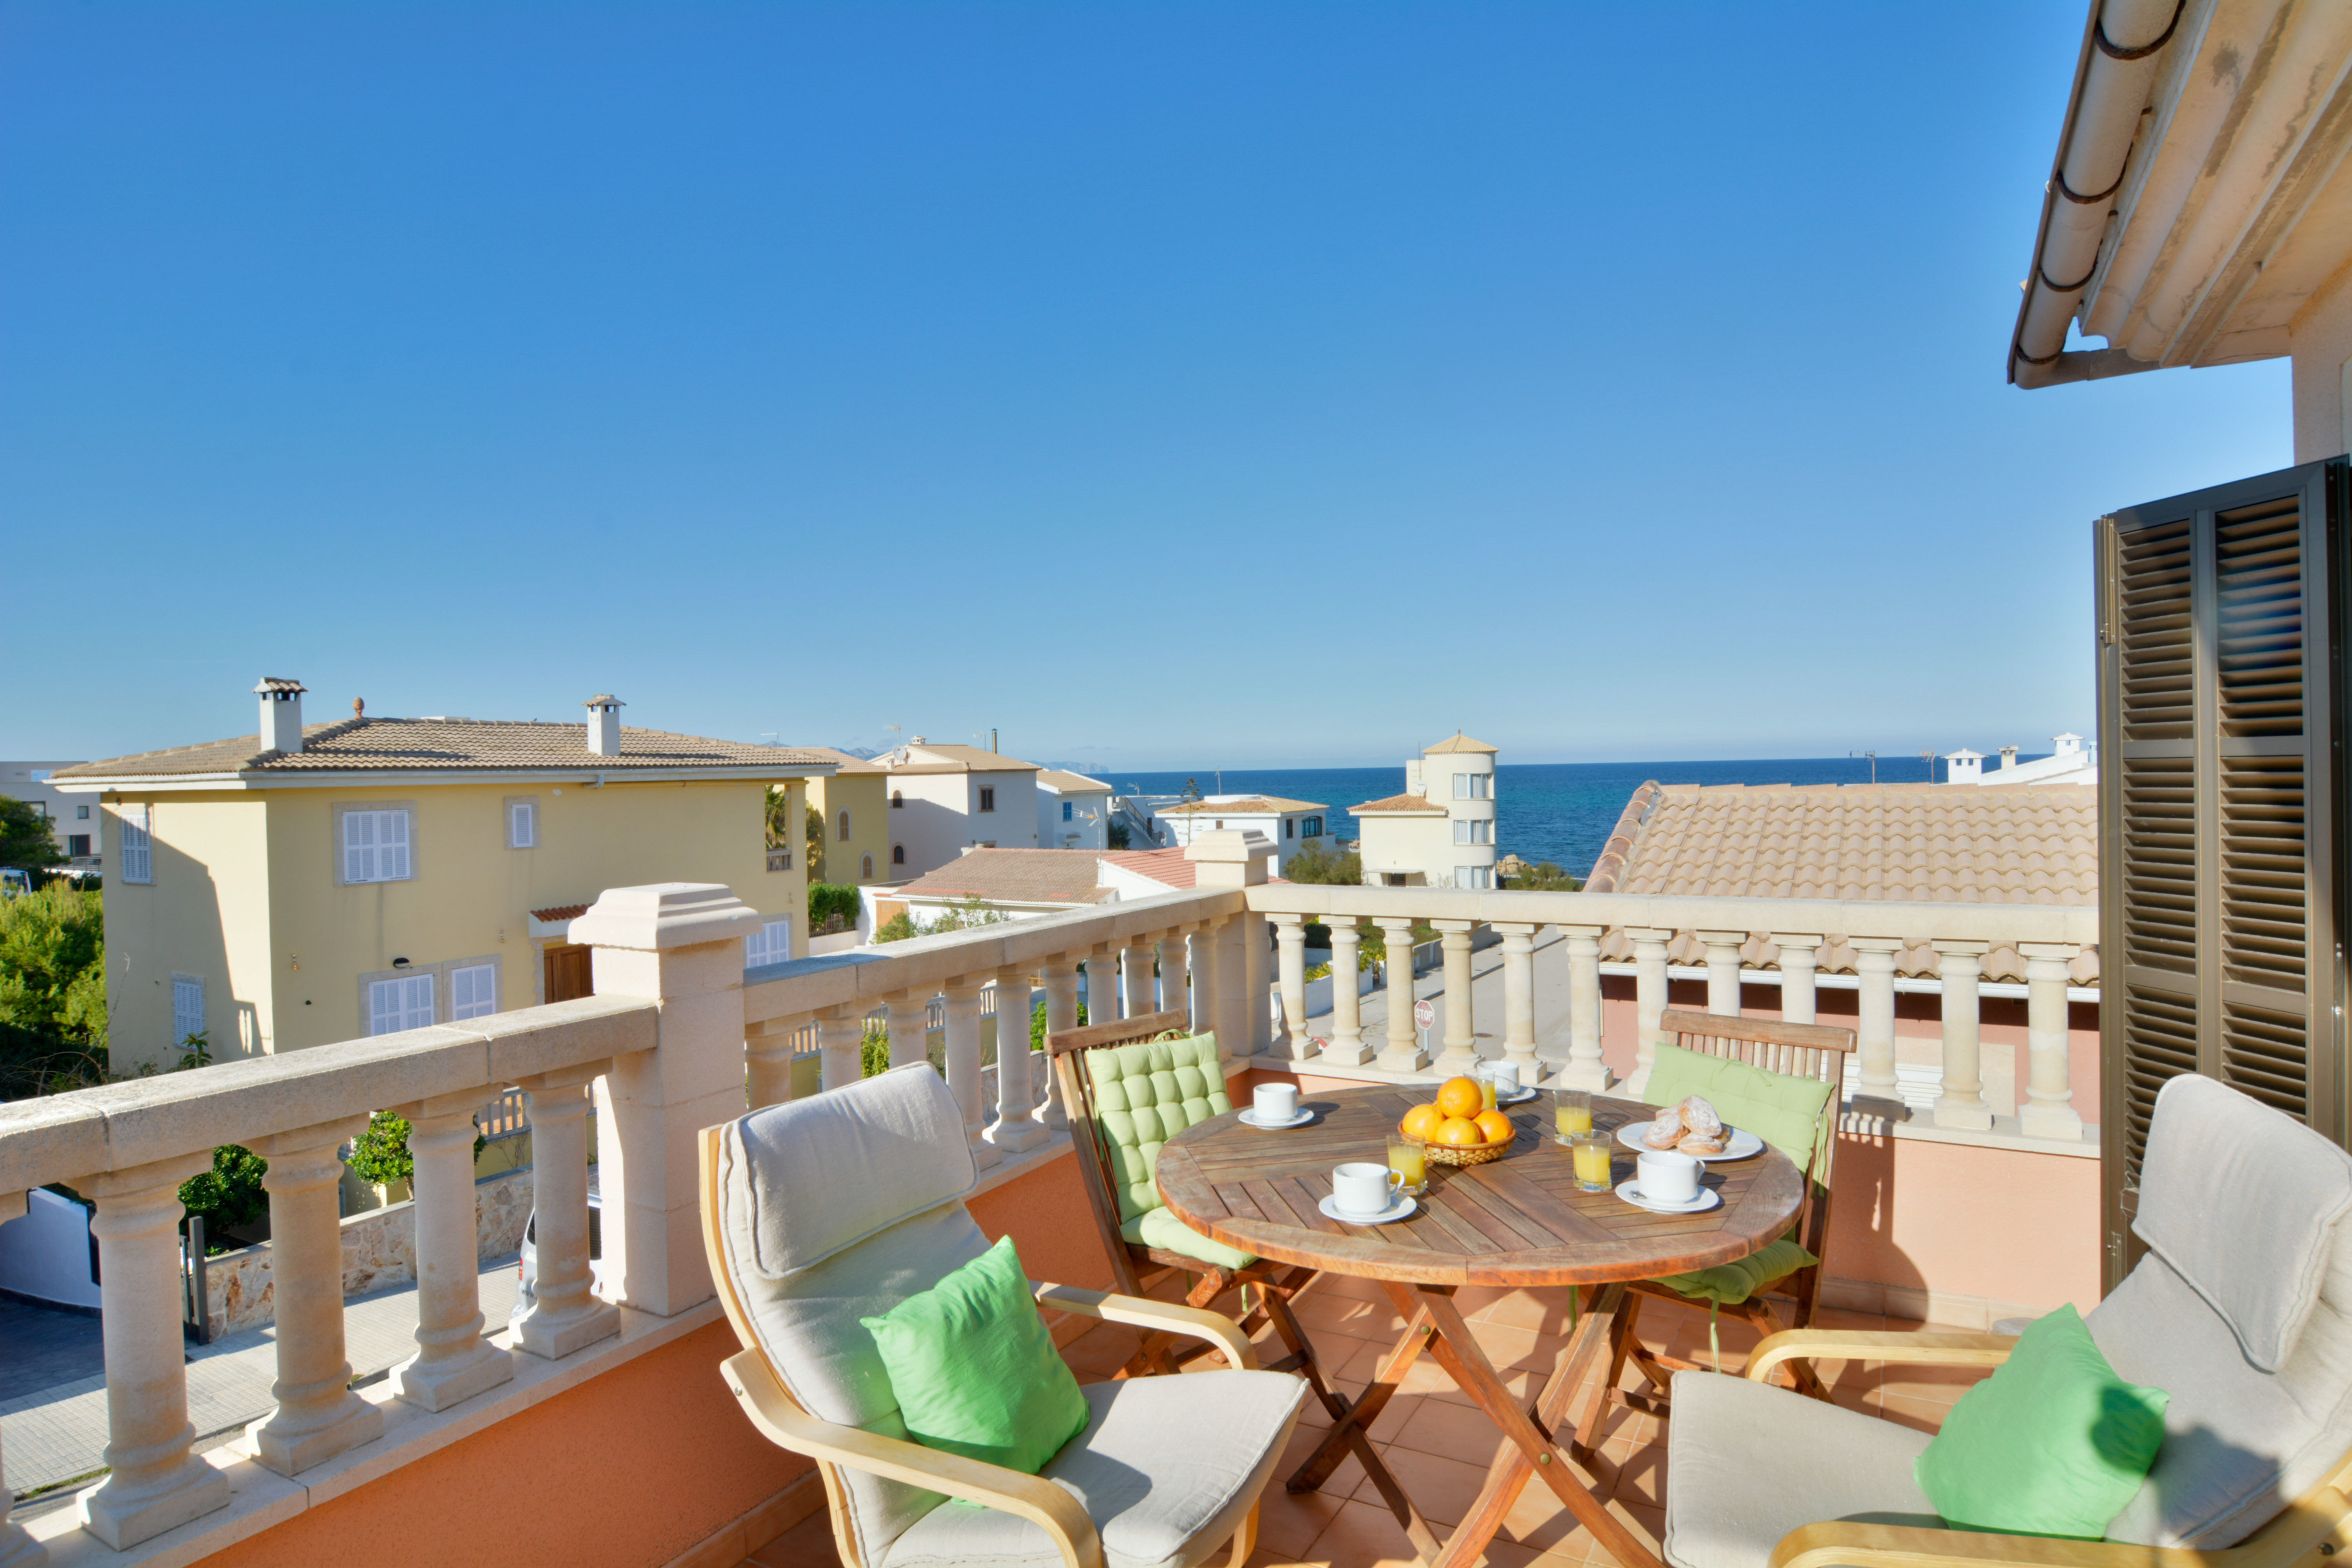 Son Serra beach apartment 350mts beach and terrace Ferienwohnung in Europa